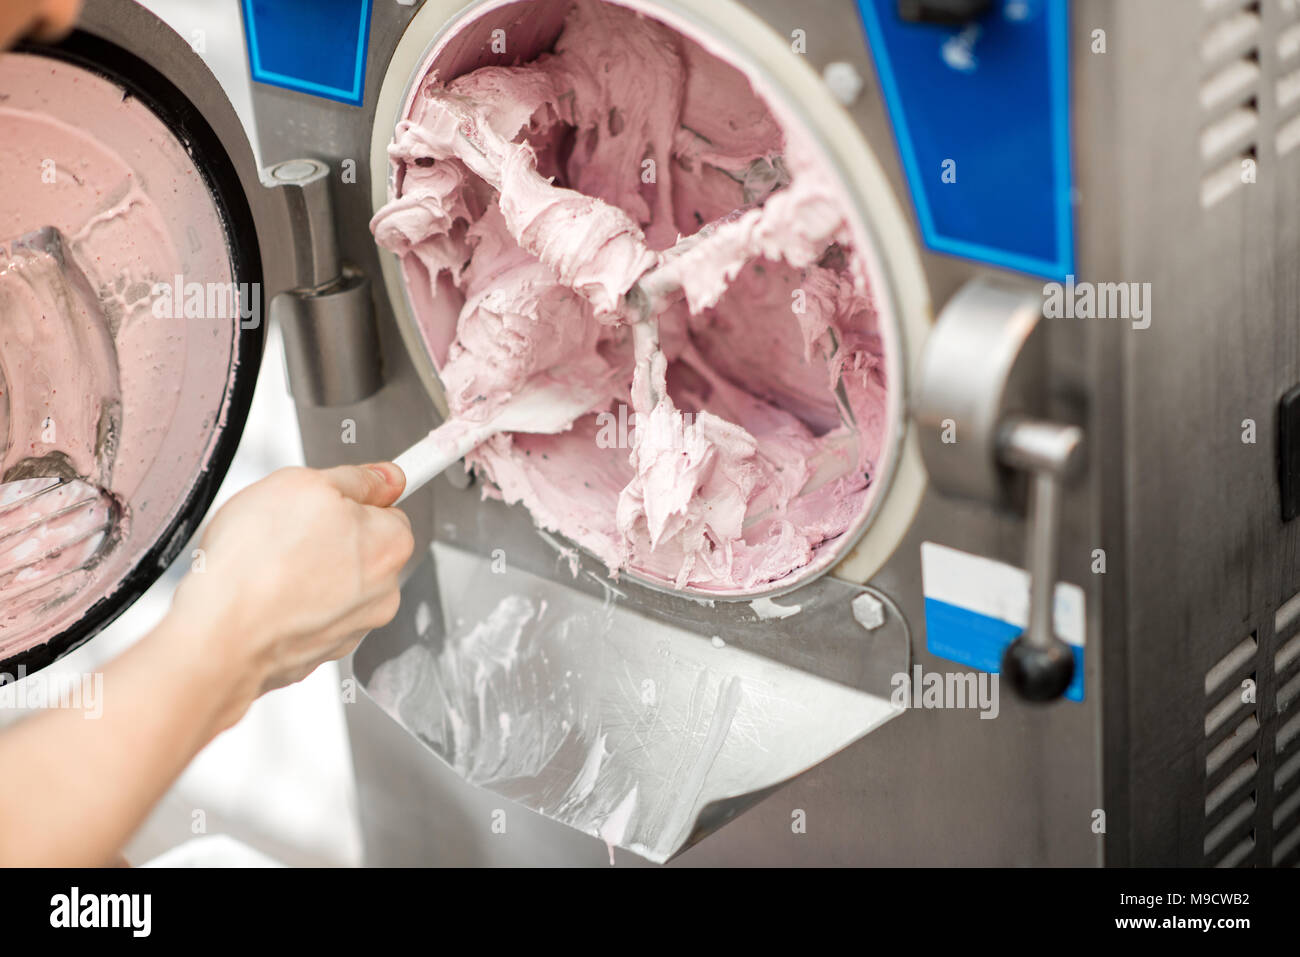 Cleaning ice cream maker machine Stock Photo